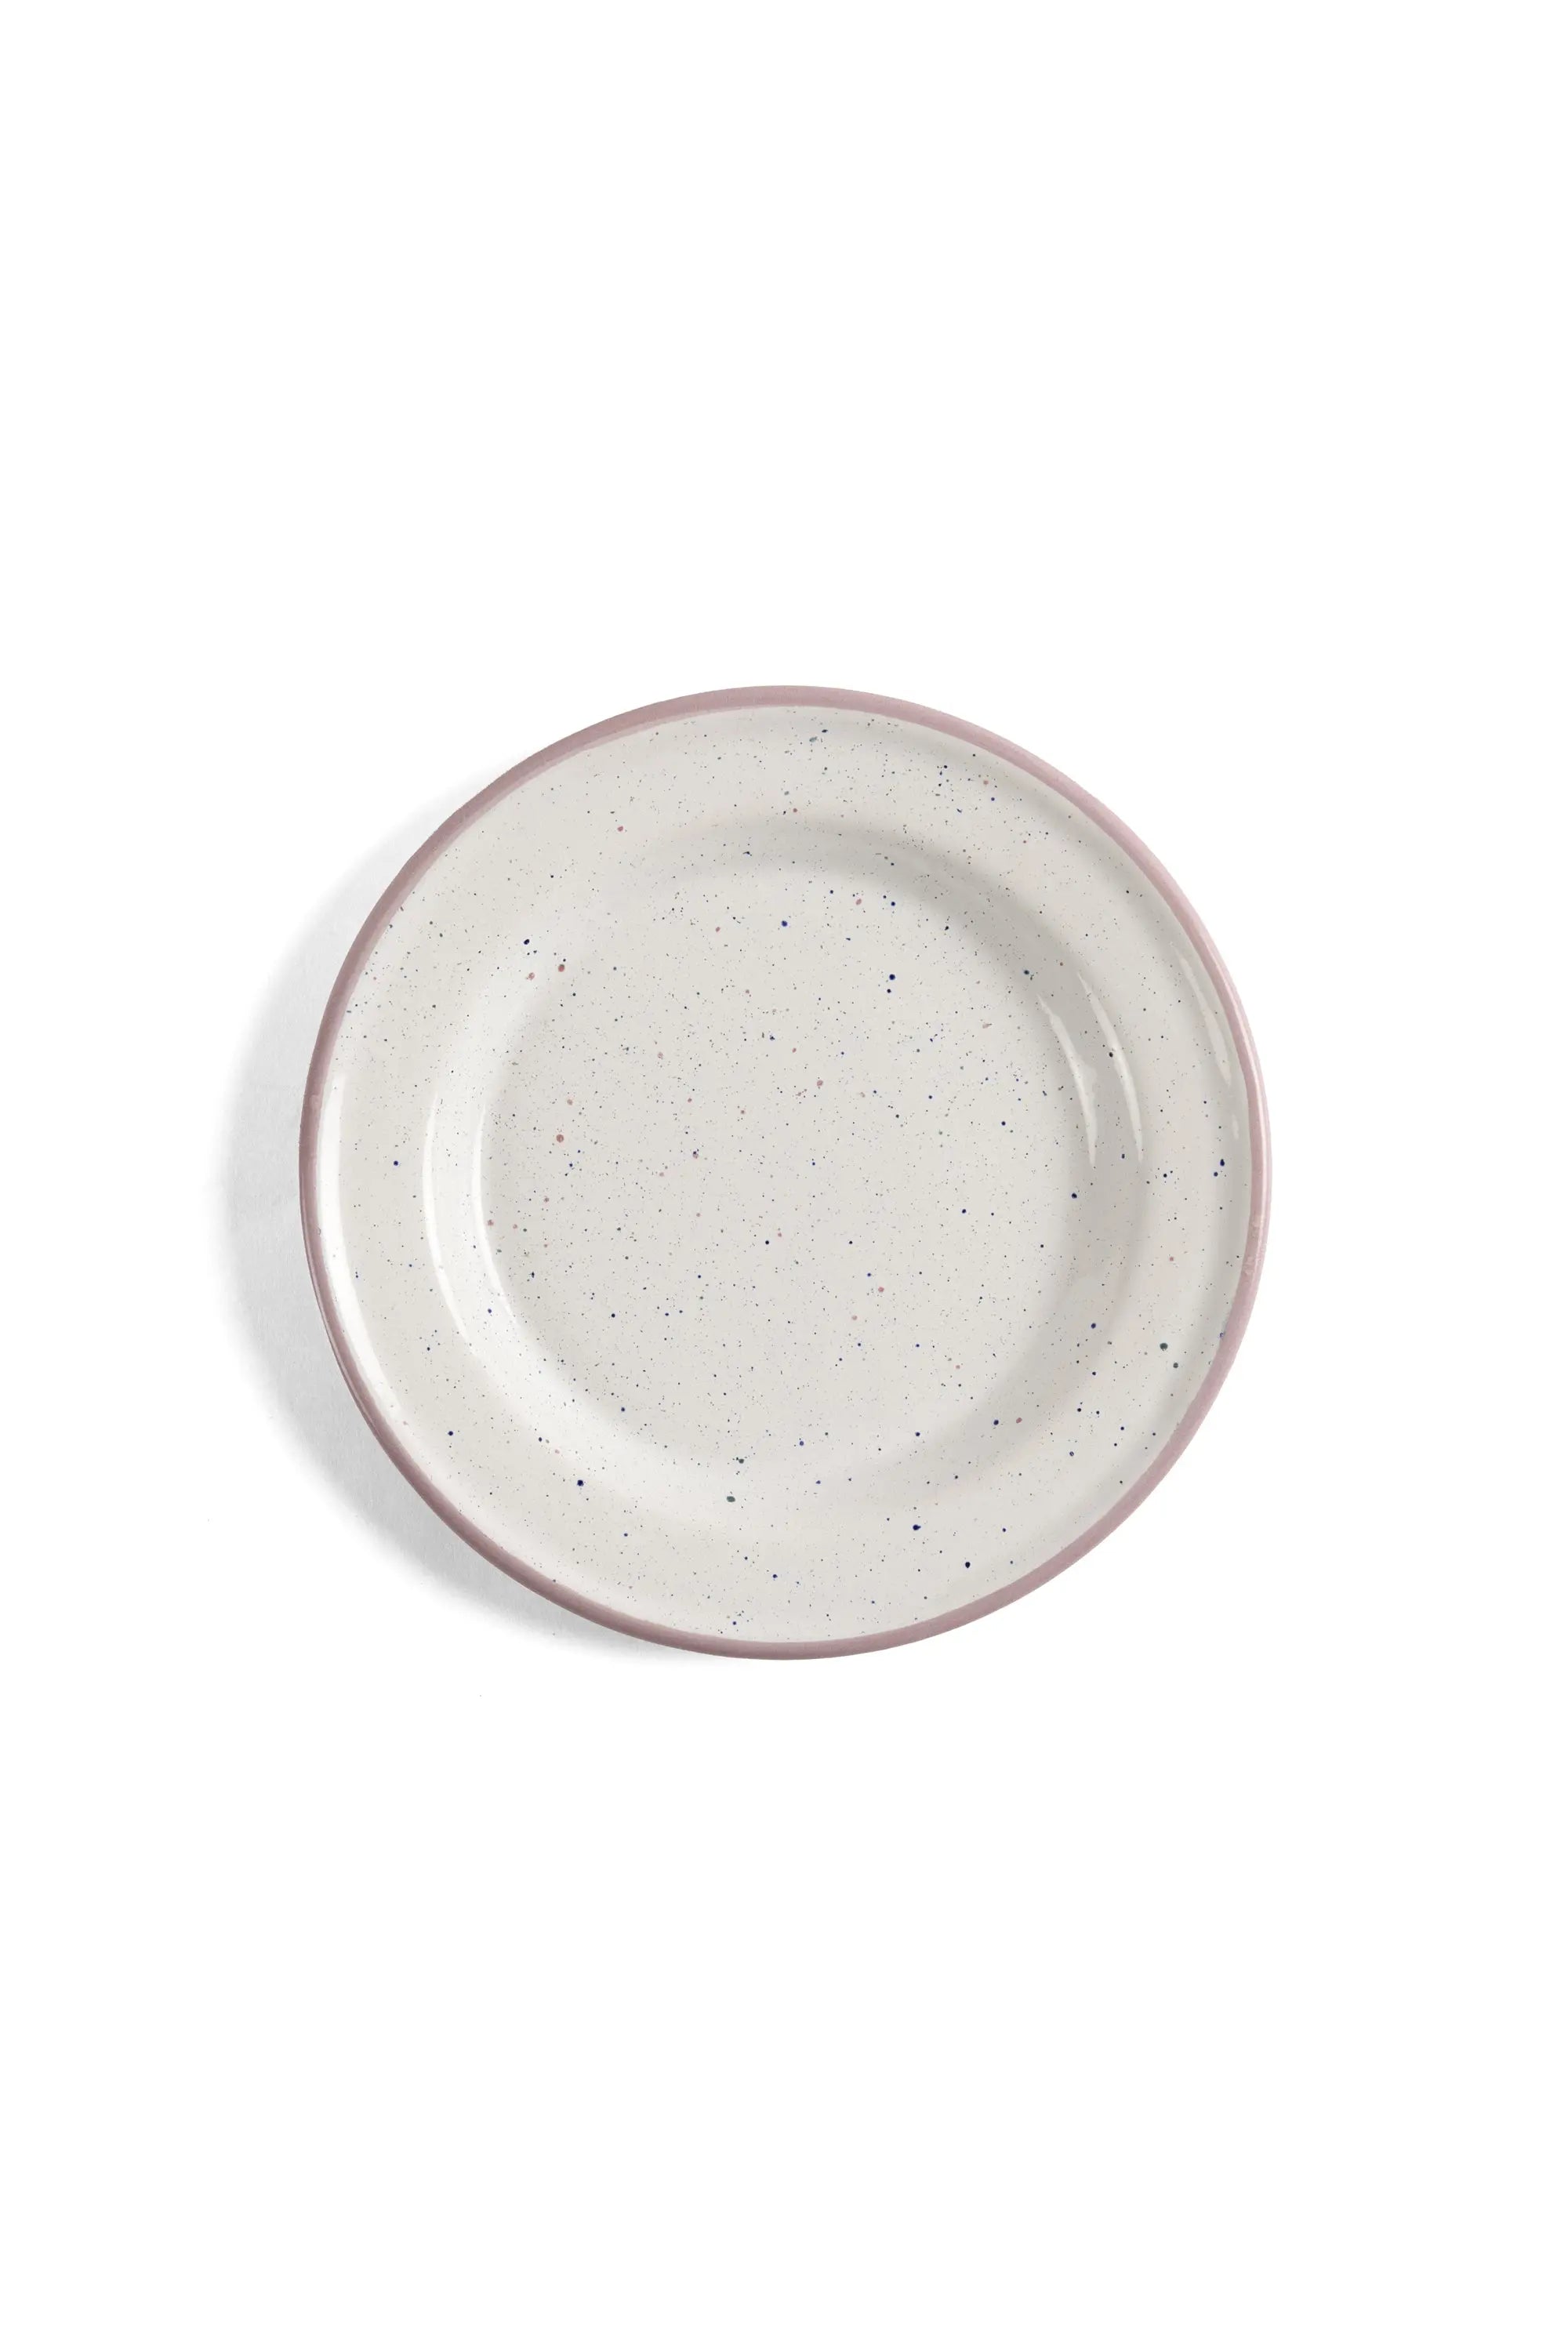 Blush Speckled Enamel Side Plate